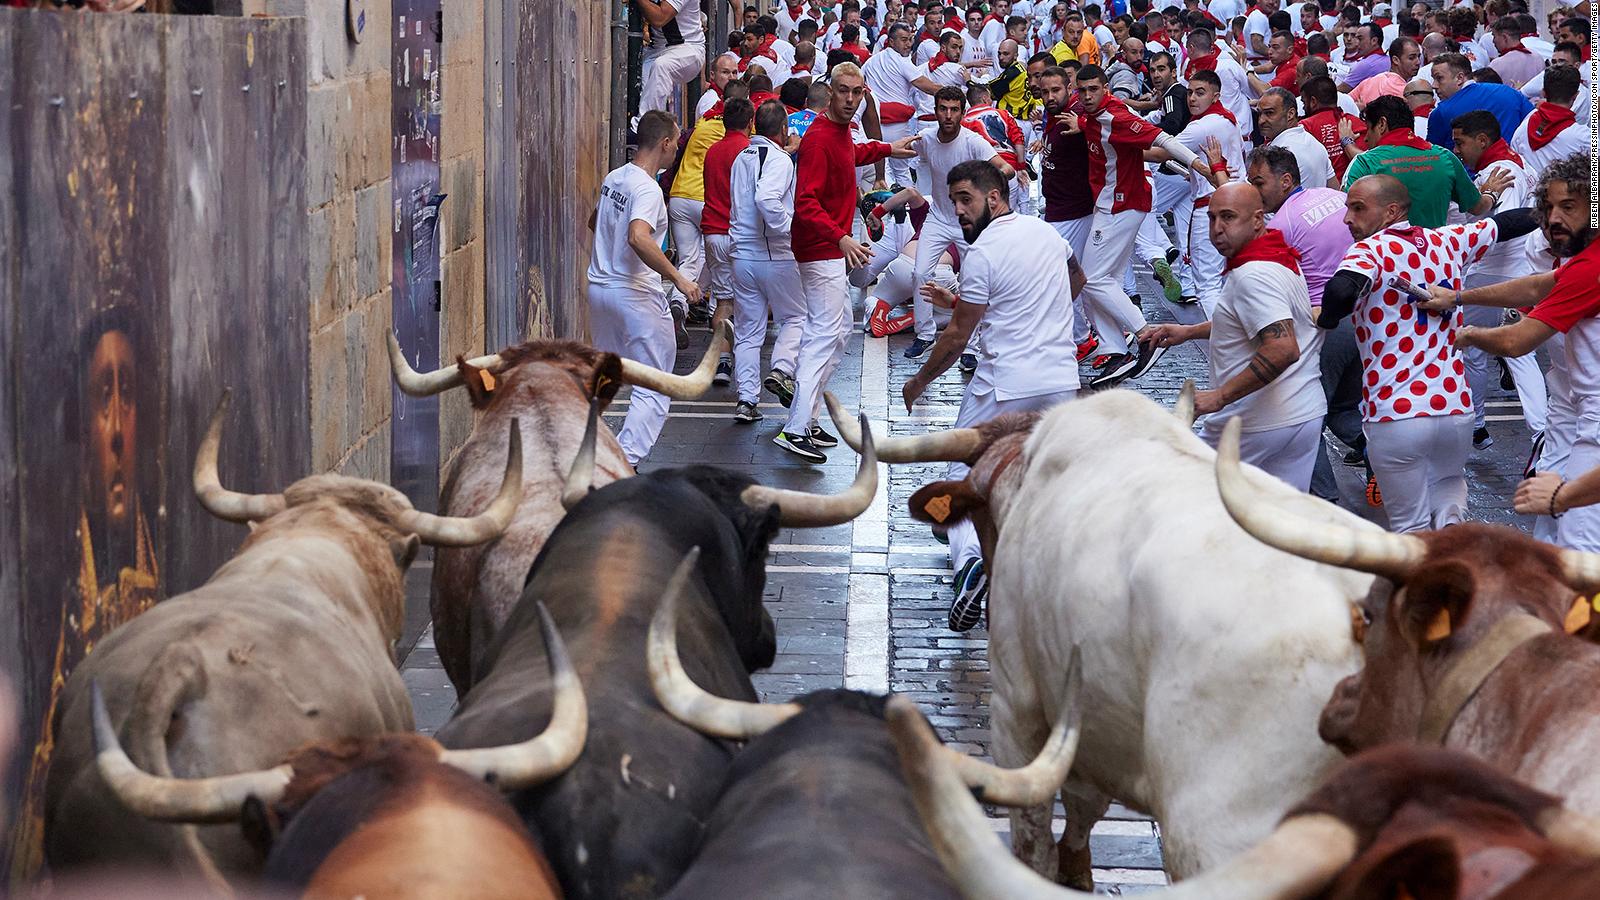 Primer encierro con toros en las Fiestas de San Fermín deja unos 6 heridos  | Video | CNN